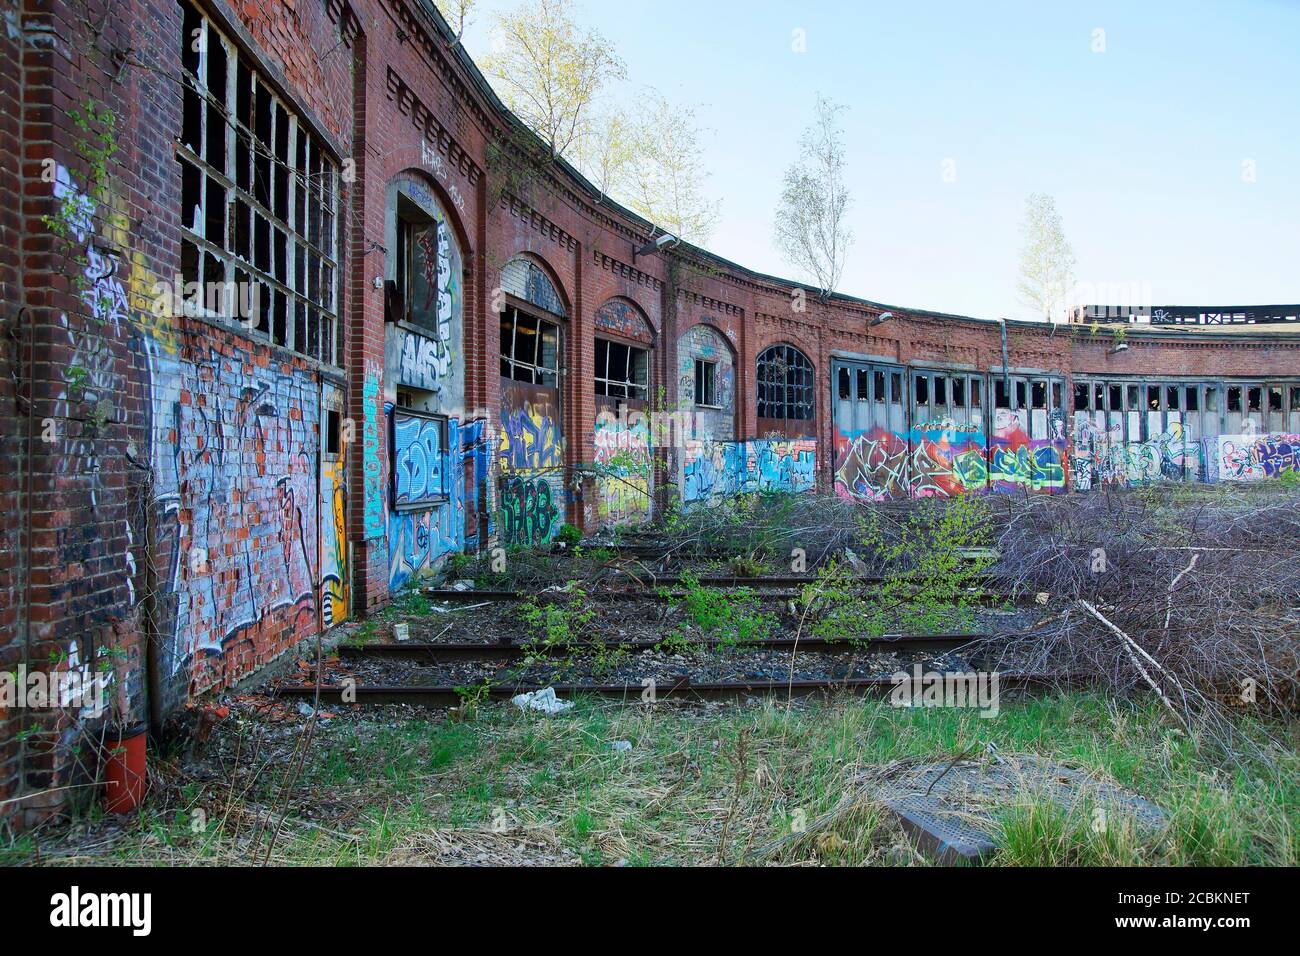 Historischer Lokschuppen einer Bahnanlage in Berlin Pankow Stock Photo